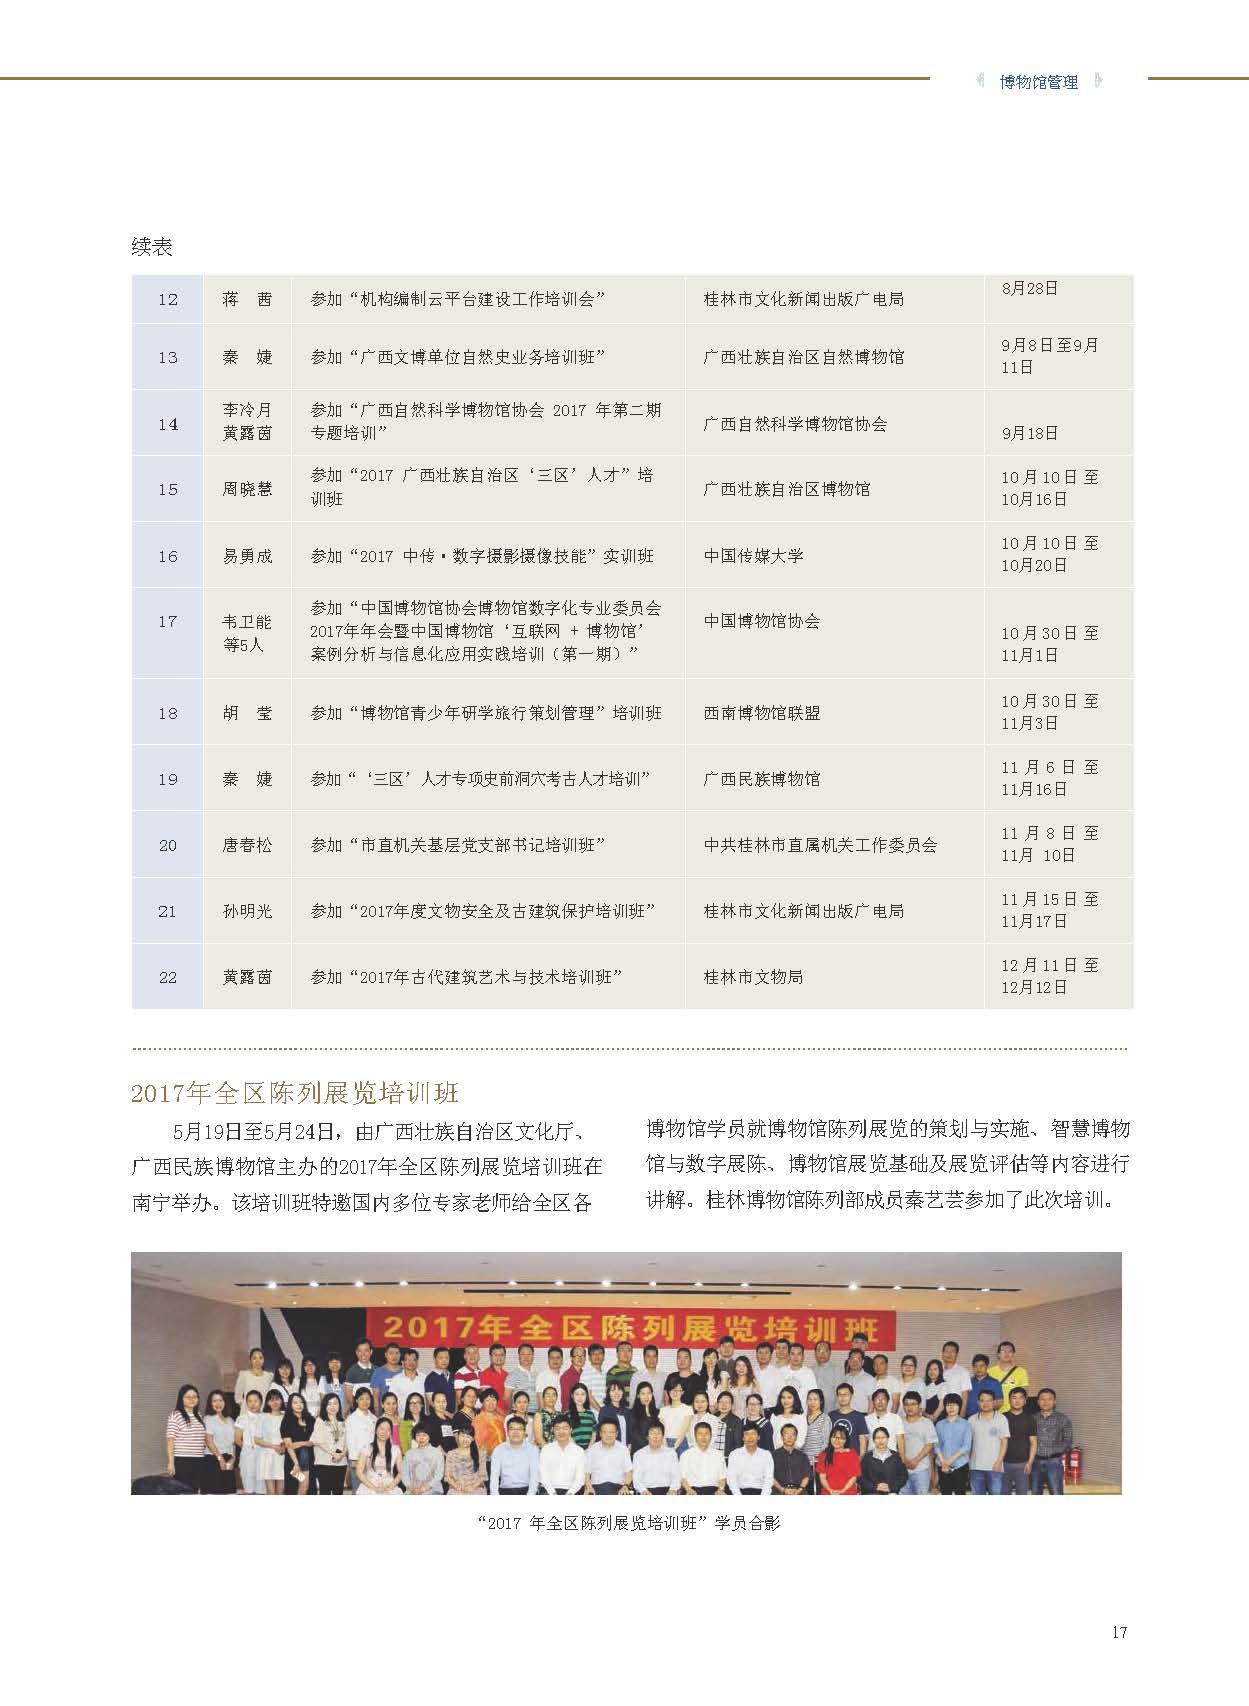 桂林博物馆2017年度报告.pdf_页面_19.jpg